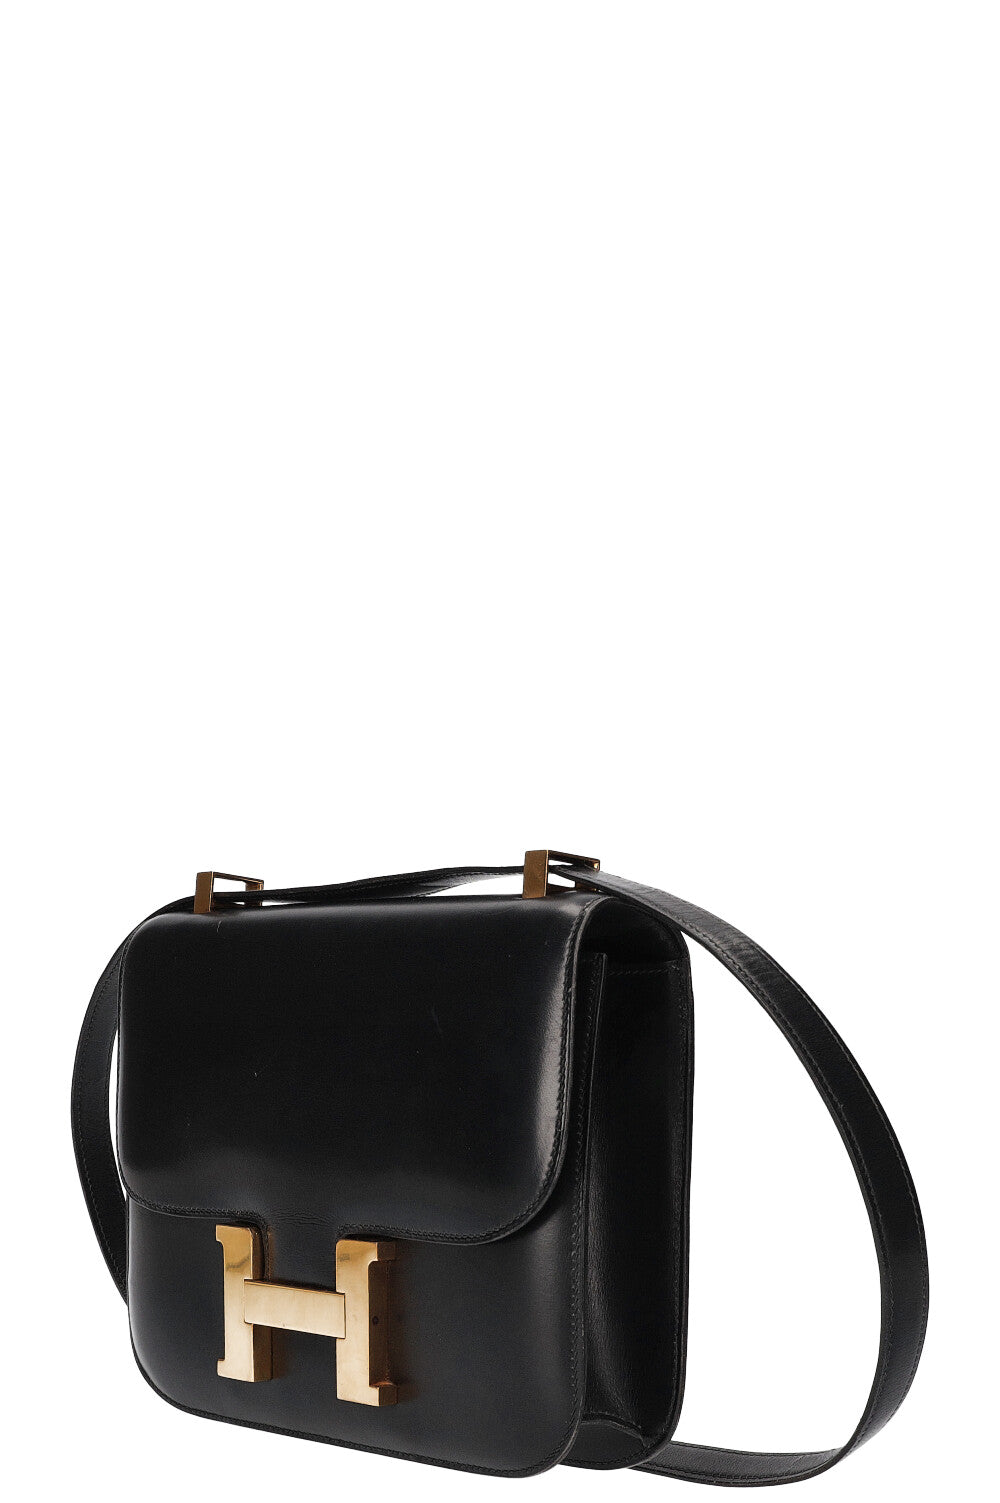 Hermès Hermes Constance shoulder bag 23 in black epsom leather